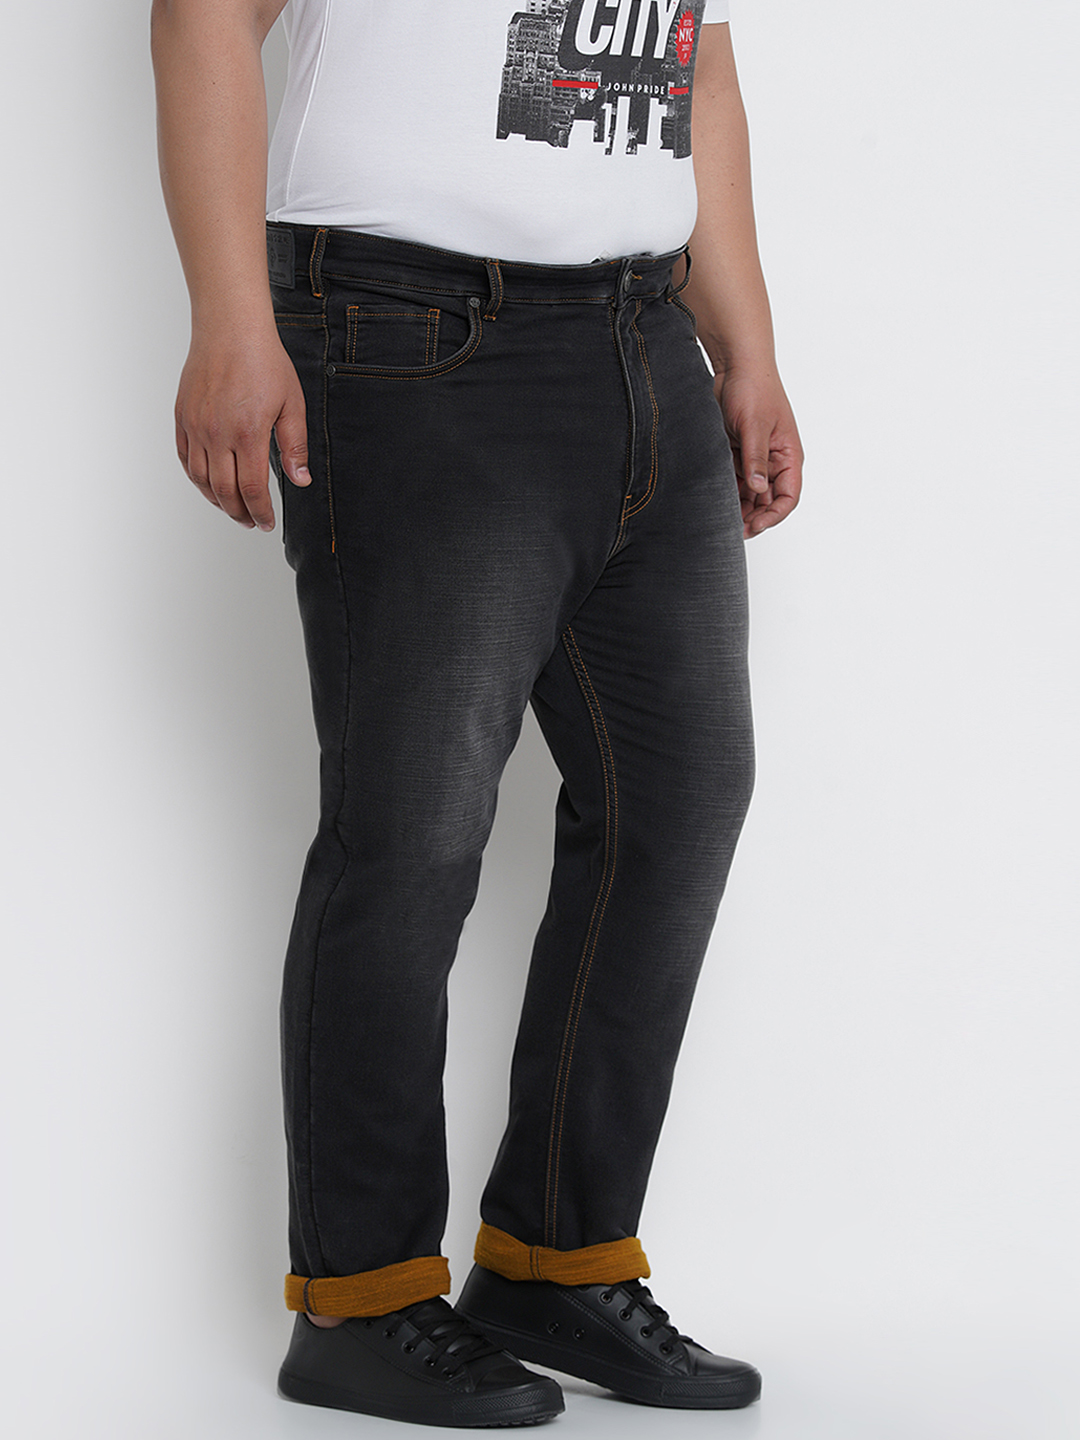 bottomwear/jeans/JPJ12124/jpj12124-5.jpg